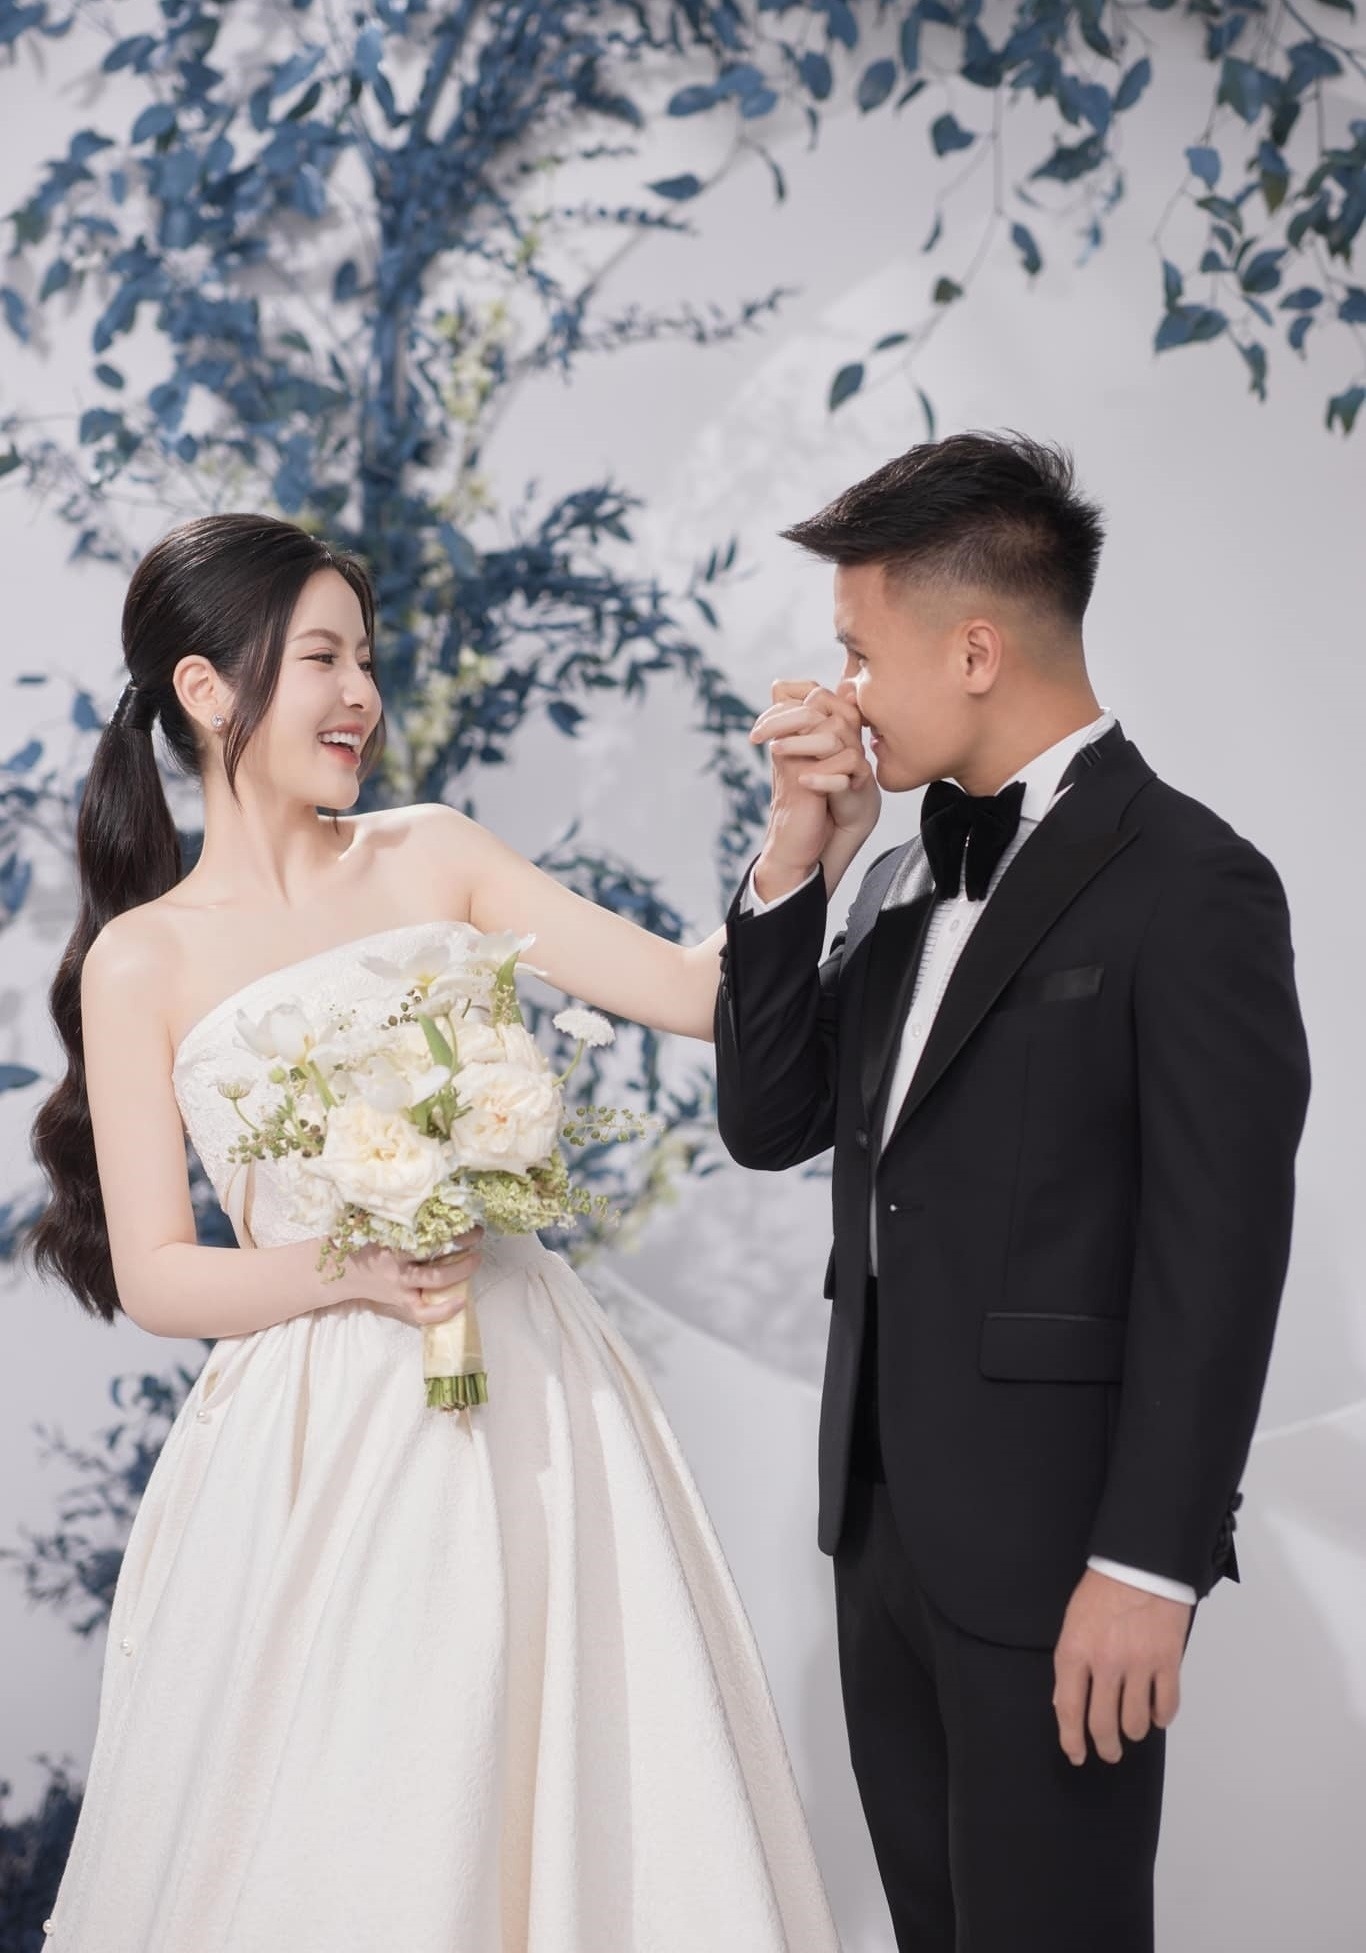 Hành trình từ yêu đến cưới của Quang Hải và Chu Thanh Huyền - ảnh 3